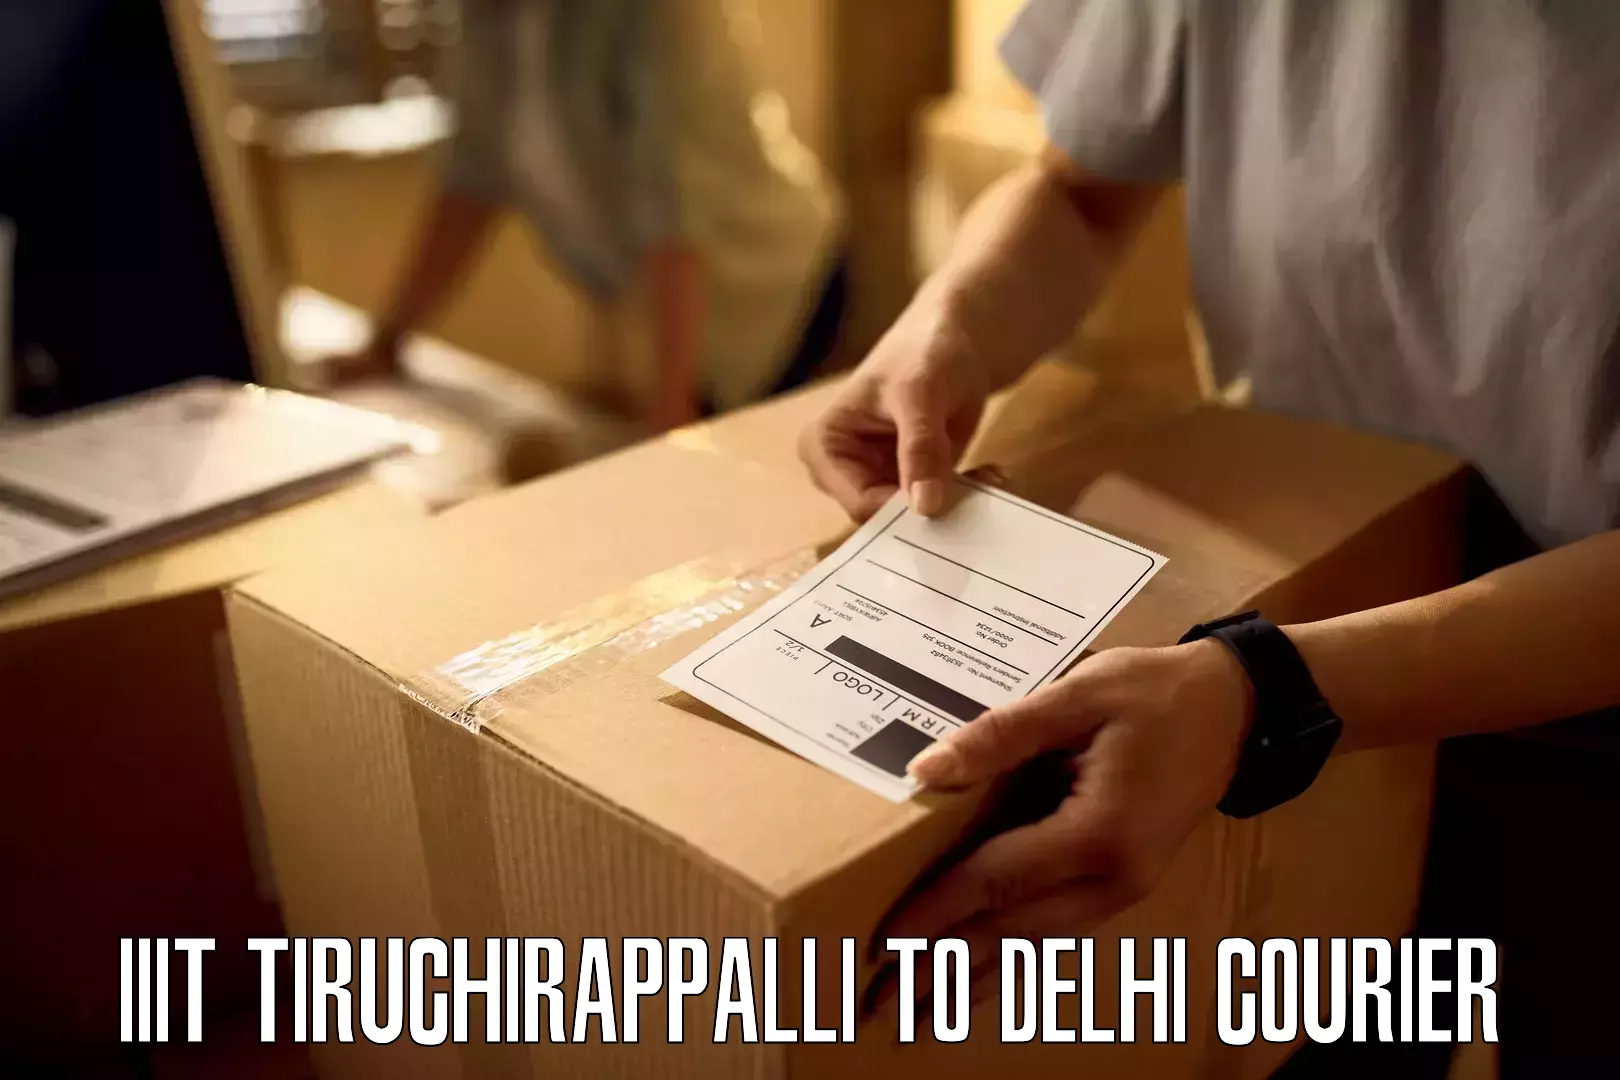 24/7 courier service in IIIT Tiruchirappalli to Delhi